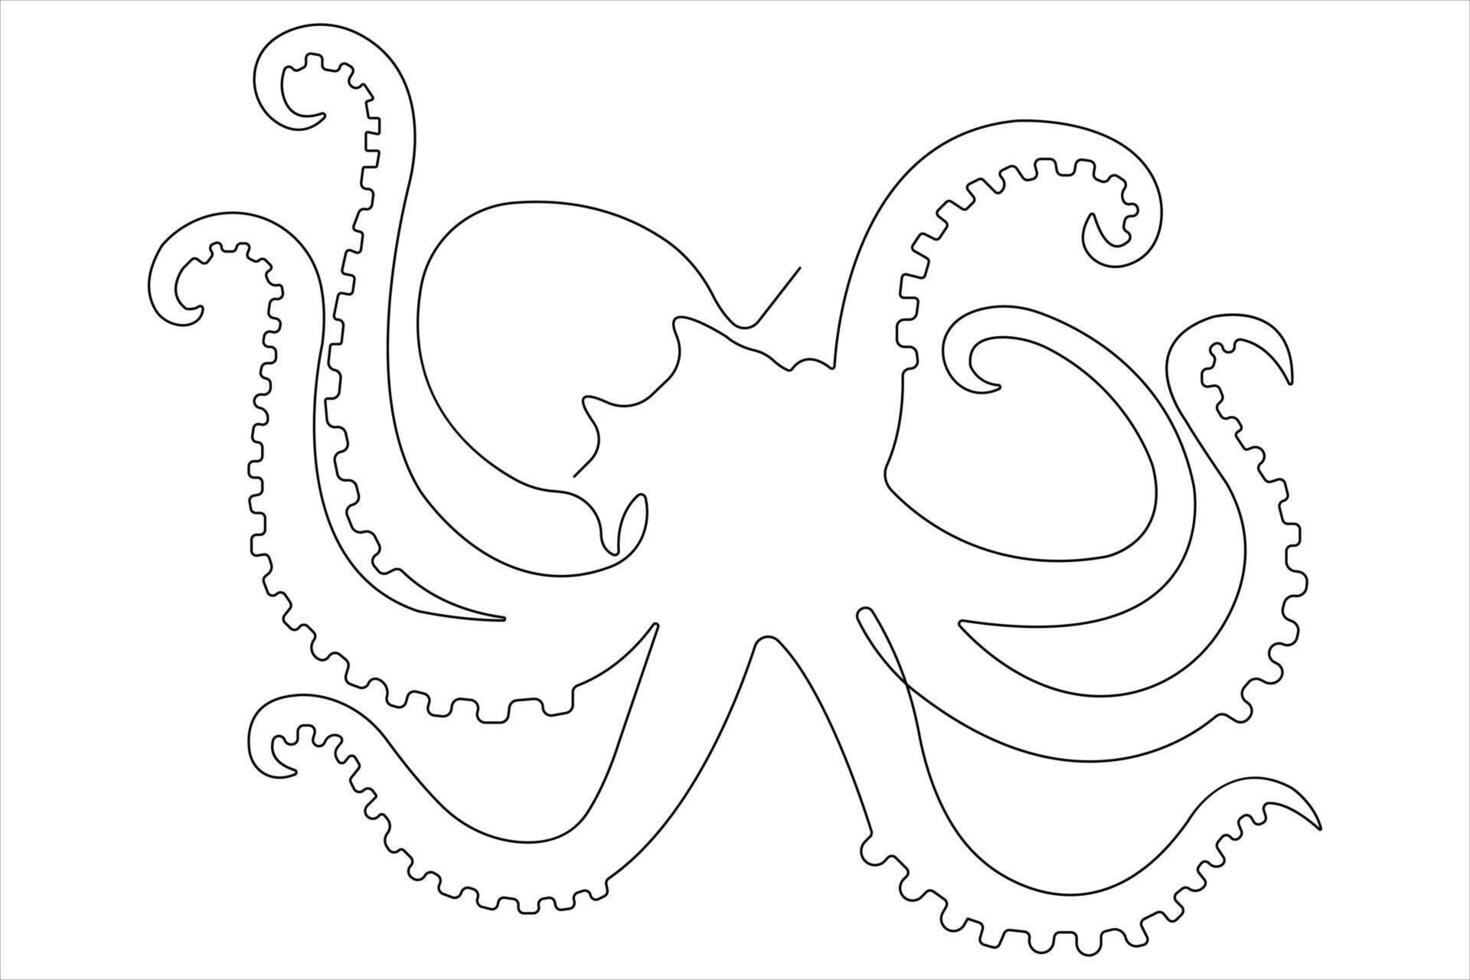 bläckfisk hav djur- kontinuerlig ett linje konst teckning av översikt vektor illustration